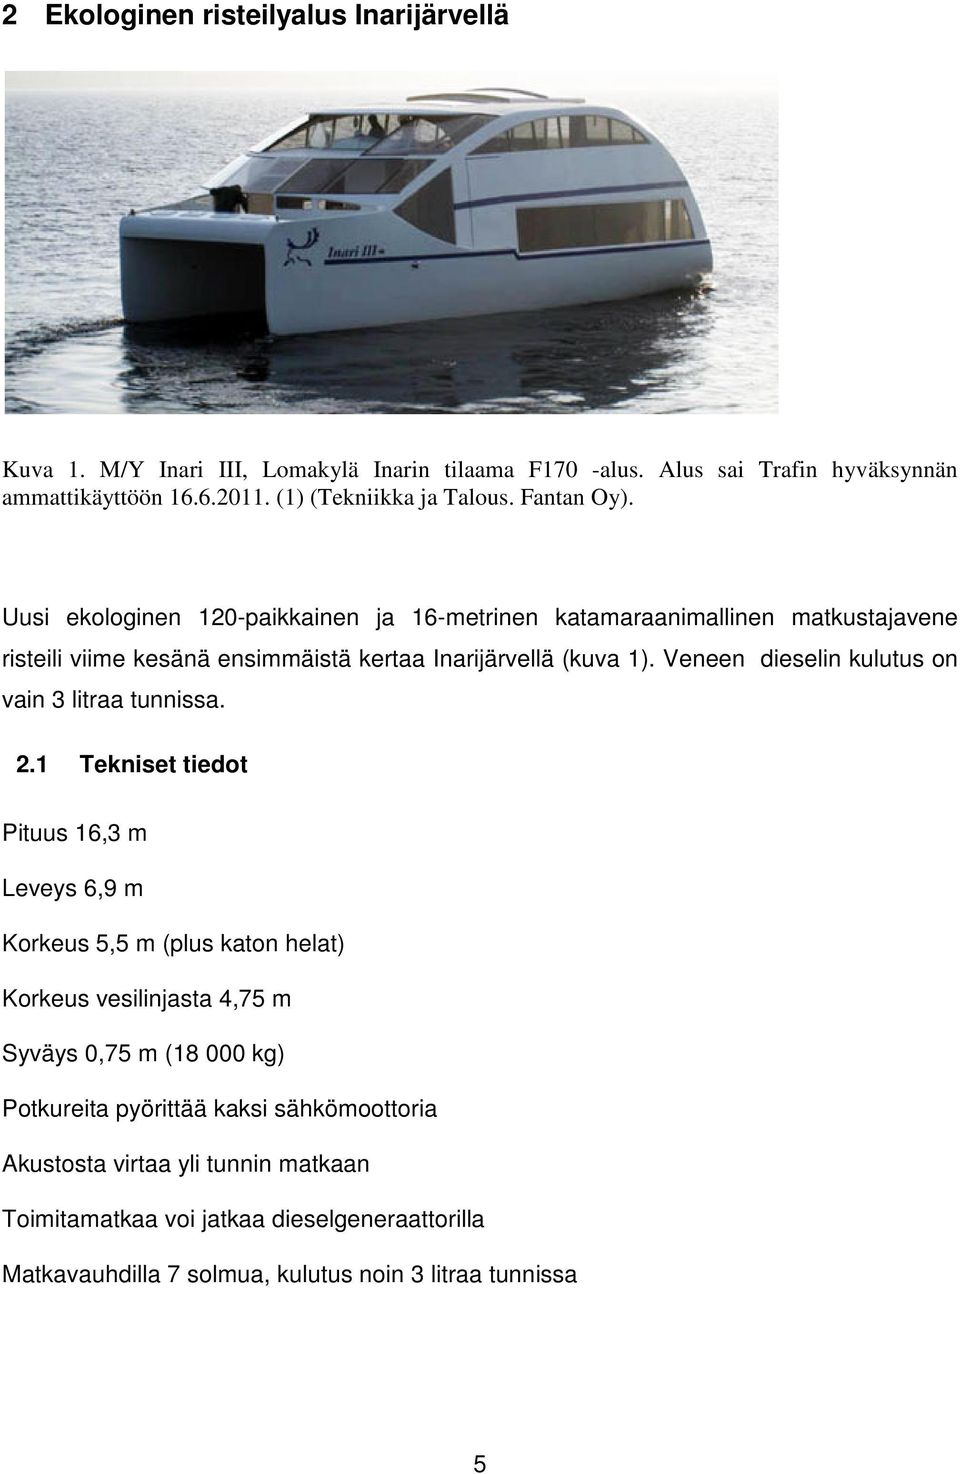 Uusi ekologinen 120-paikkainen ja 16-metrinen katamaraanimallinen matkustajavene risteili viime kesänä ensimmäistä kertaa Inarijärvellä (kuva 1).